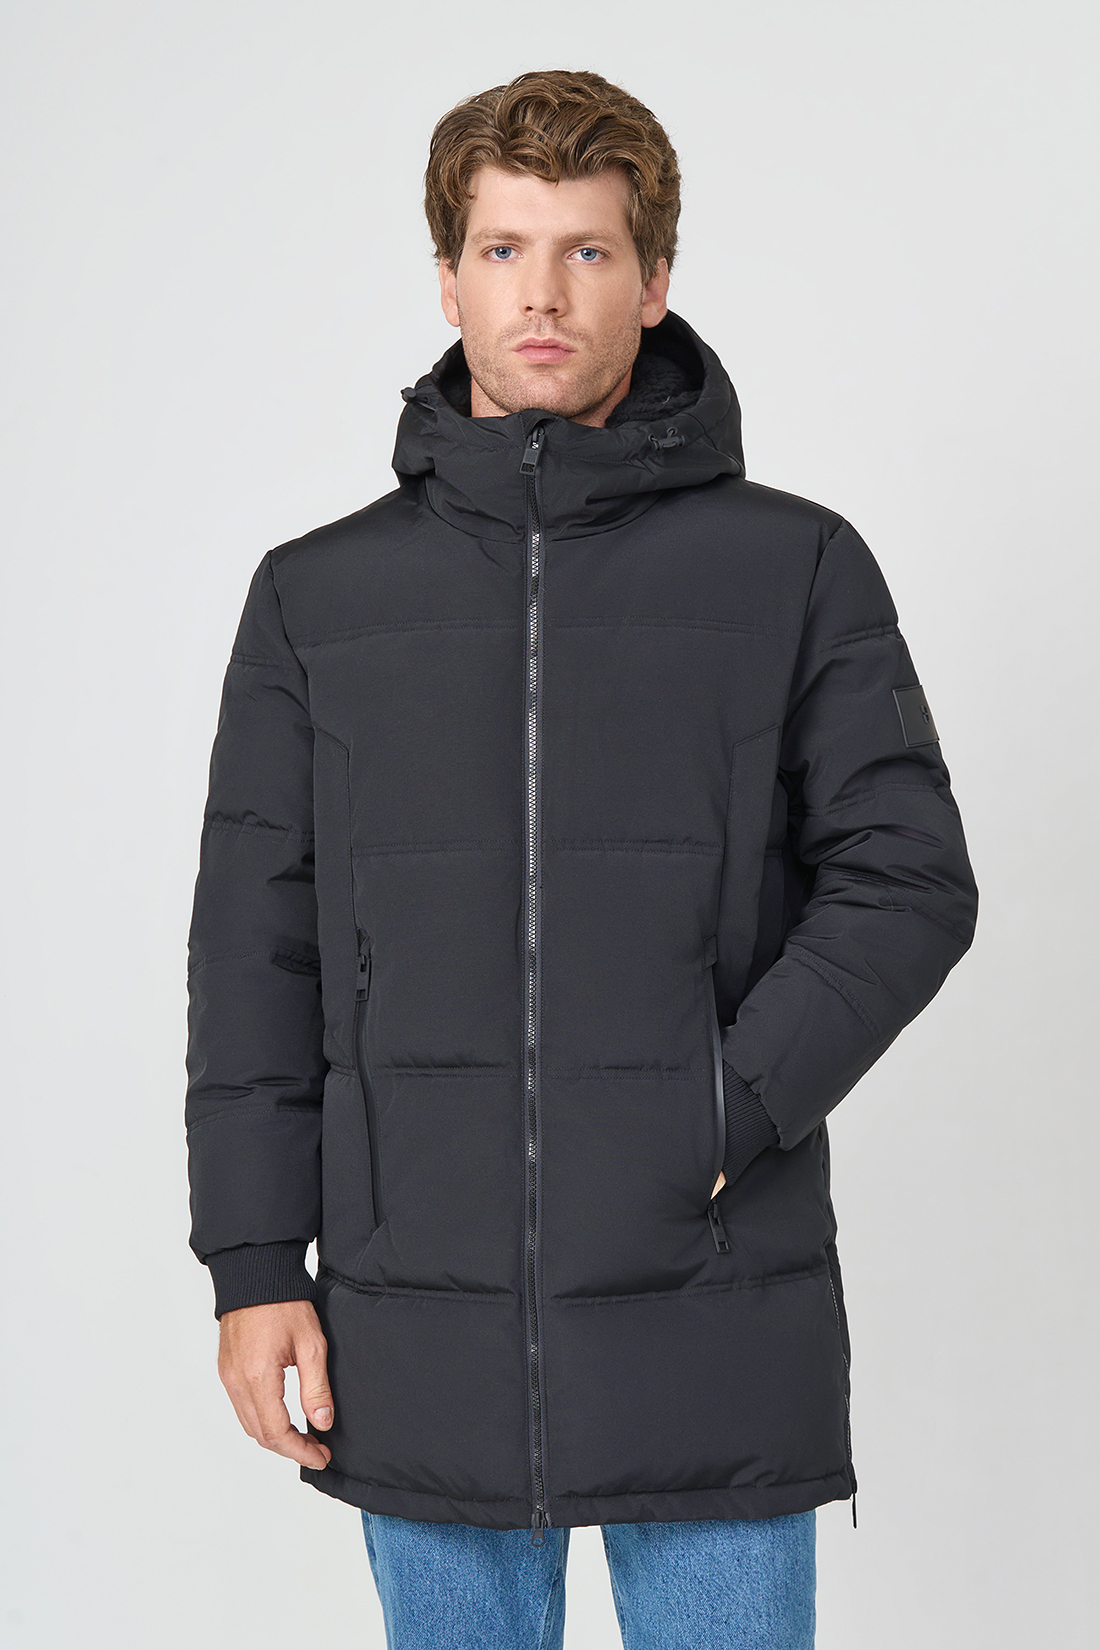 Зимняя куртка мужская Baon B5423513 черная S